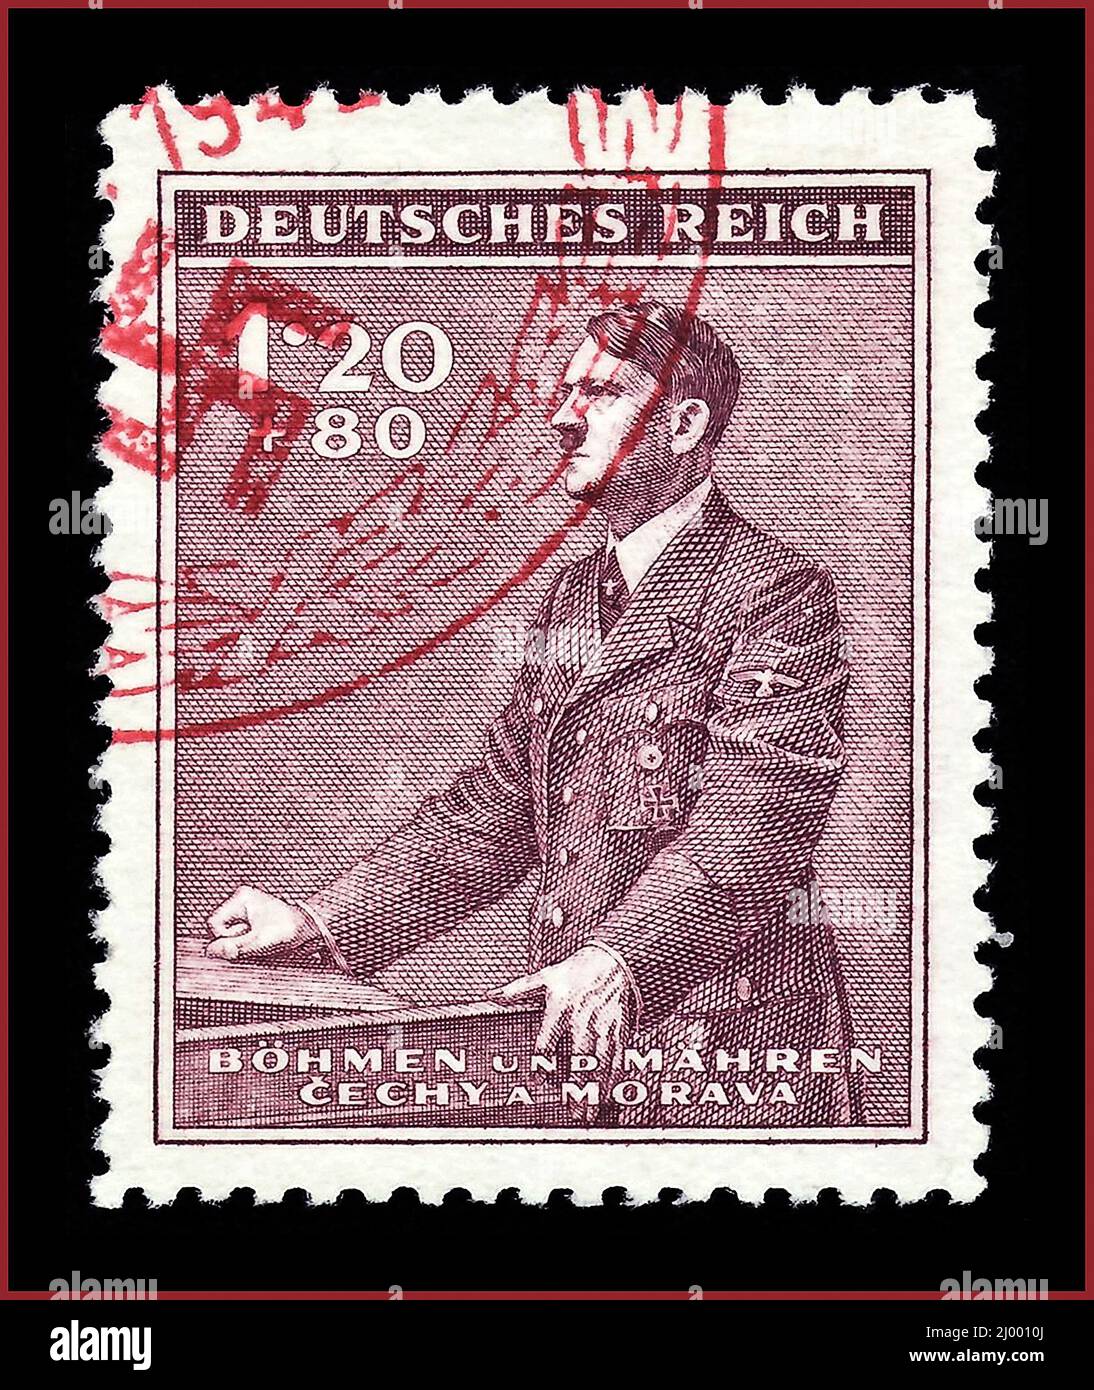 TIMBRE-POSTE ADOLF HITLER timbre-supplément semi-postal du «Protektorat Böhmen und Mähren» (protectorat de la Bohême et de la Moravie) nazi-allemand; 1942; timbre semi-postal de l'émission du timbre-Adolf «Führer» à l'anniversaire de la naissance du «53th»; Hitler montre un motif; Le protectorat nazi 'Bohême et Moravie' existait 1939-1945 du 15 mars 1939 au 8 mai 1945 dans le cadre de la patrie de l'Empire allemand. Banque D'Images